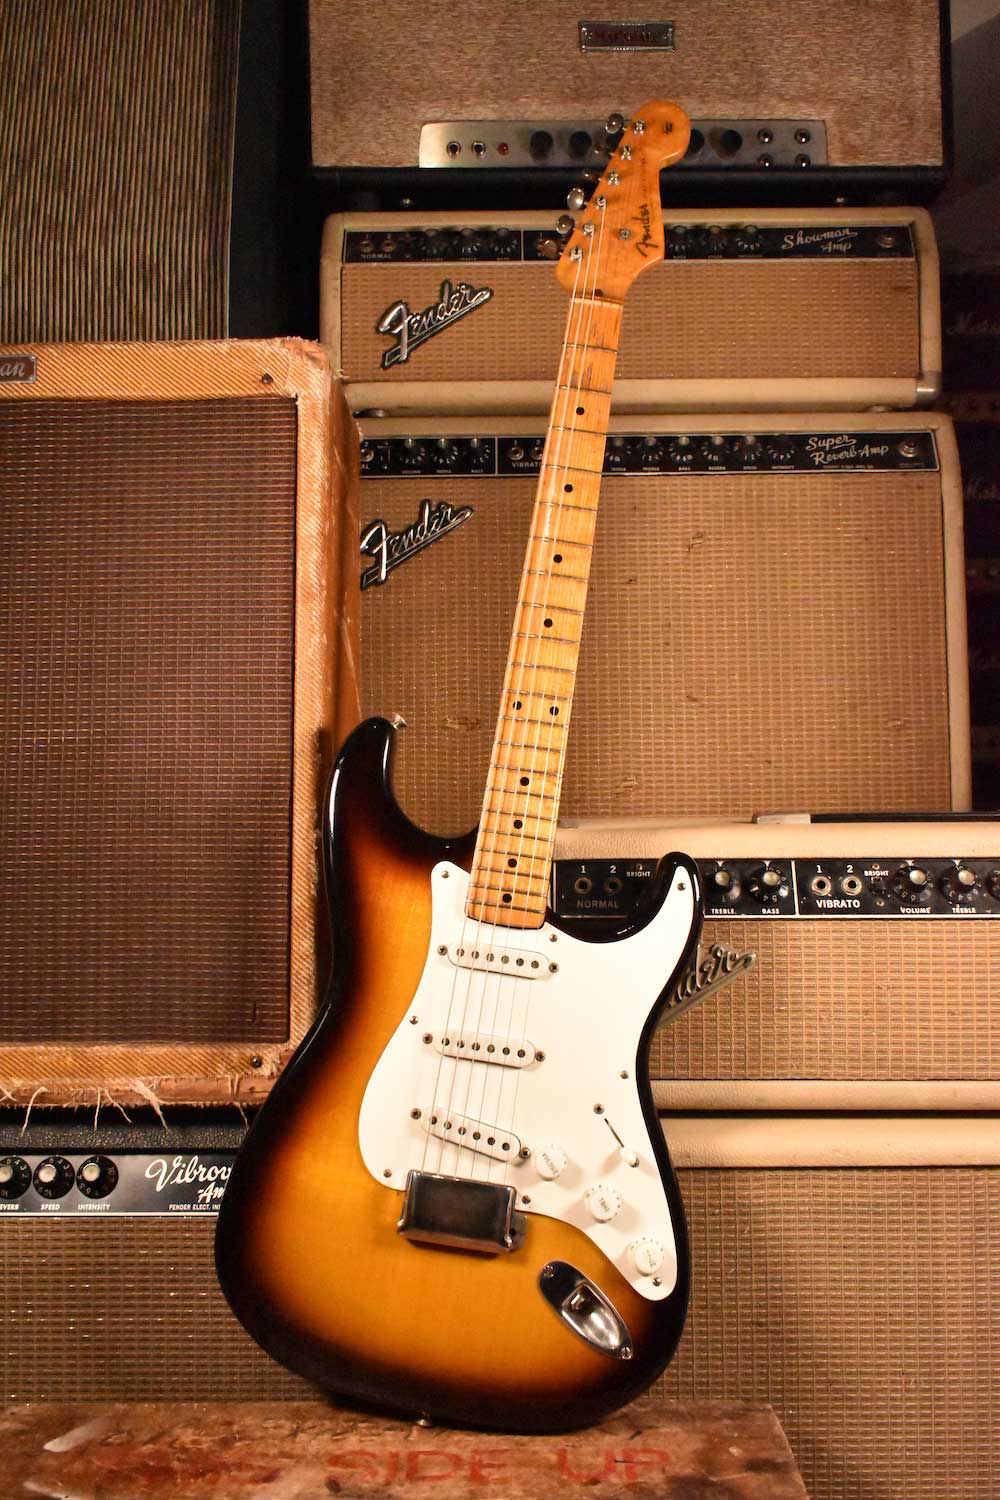 1954 Fender Stratocaster serial number 0015 - Cesco's Corner Guitars